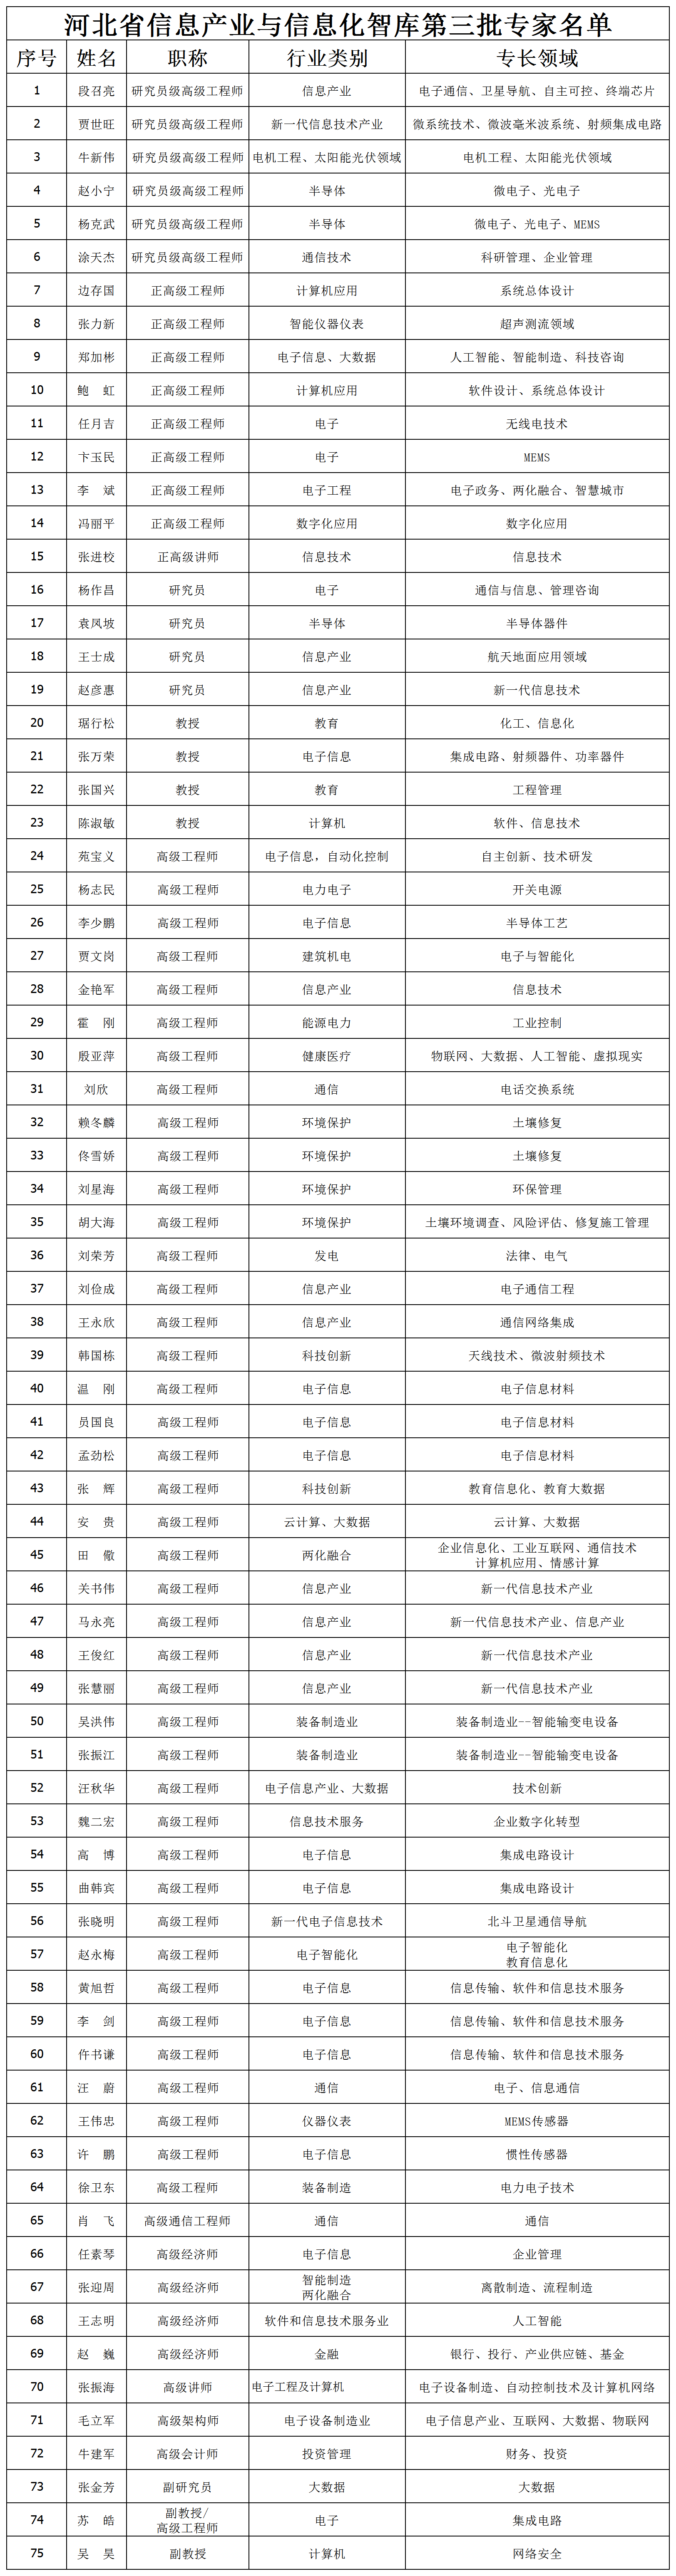 河北省信息产业与信息化智库第三批专家名单(1)